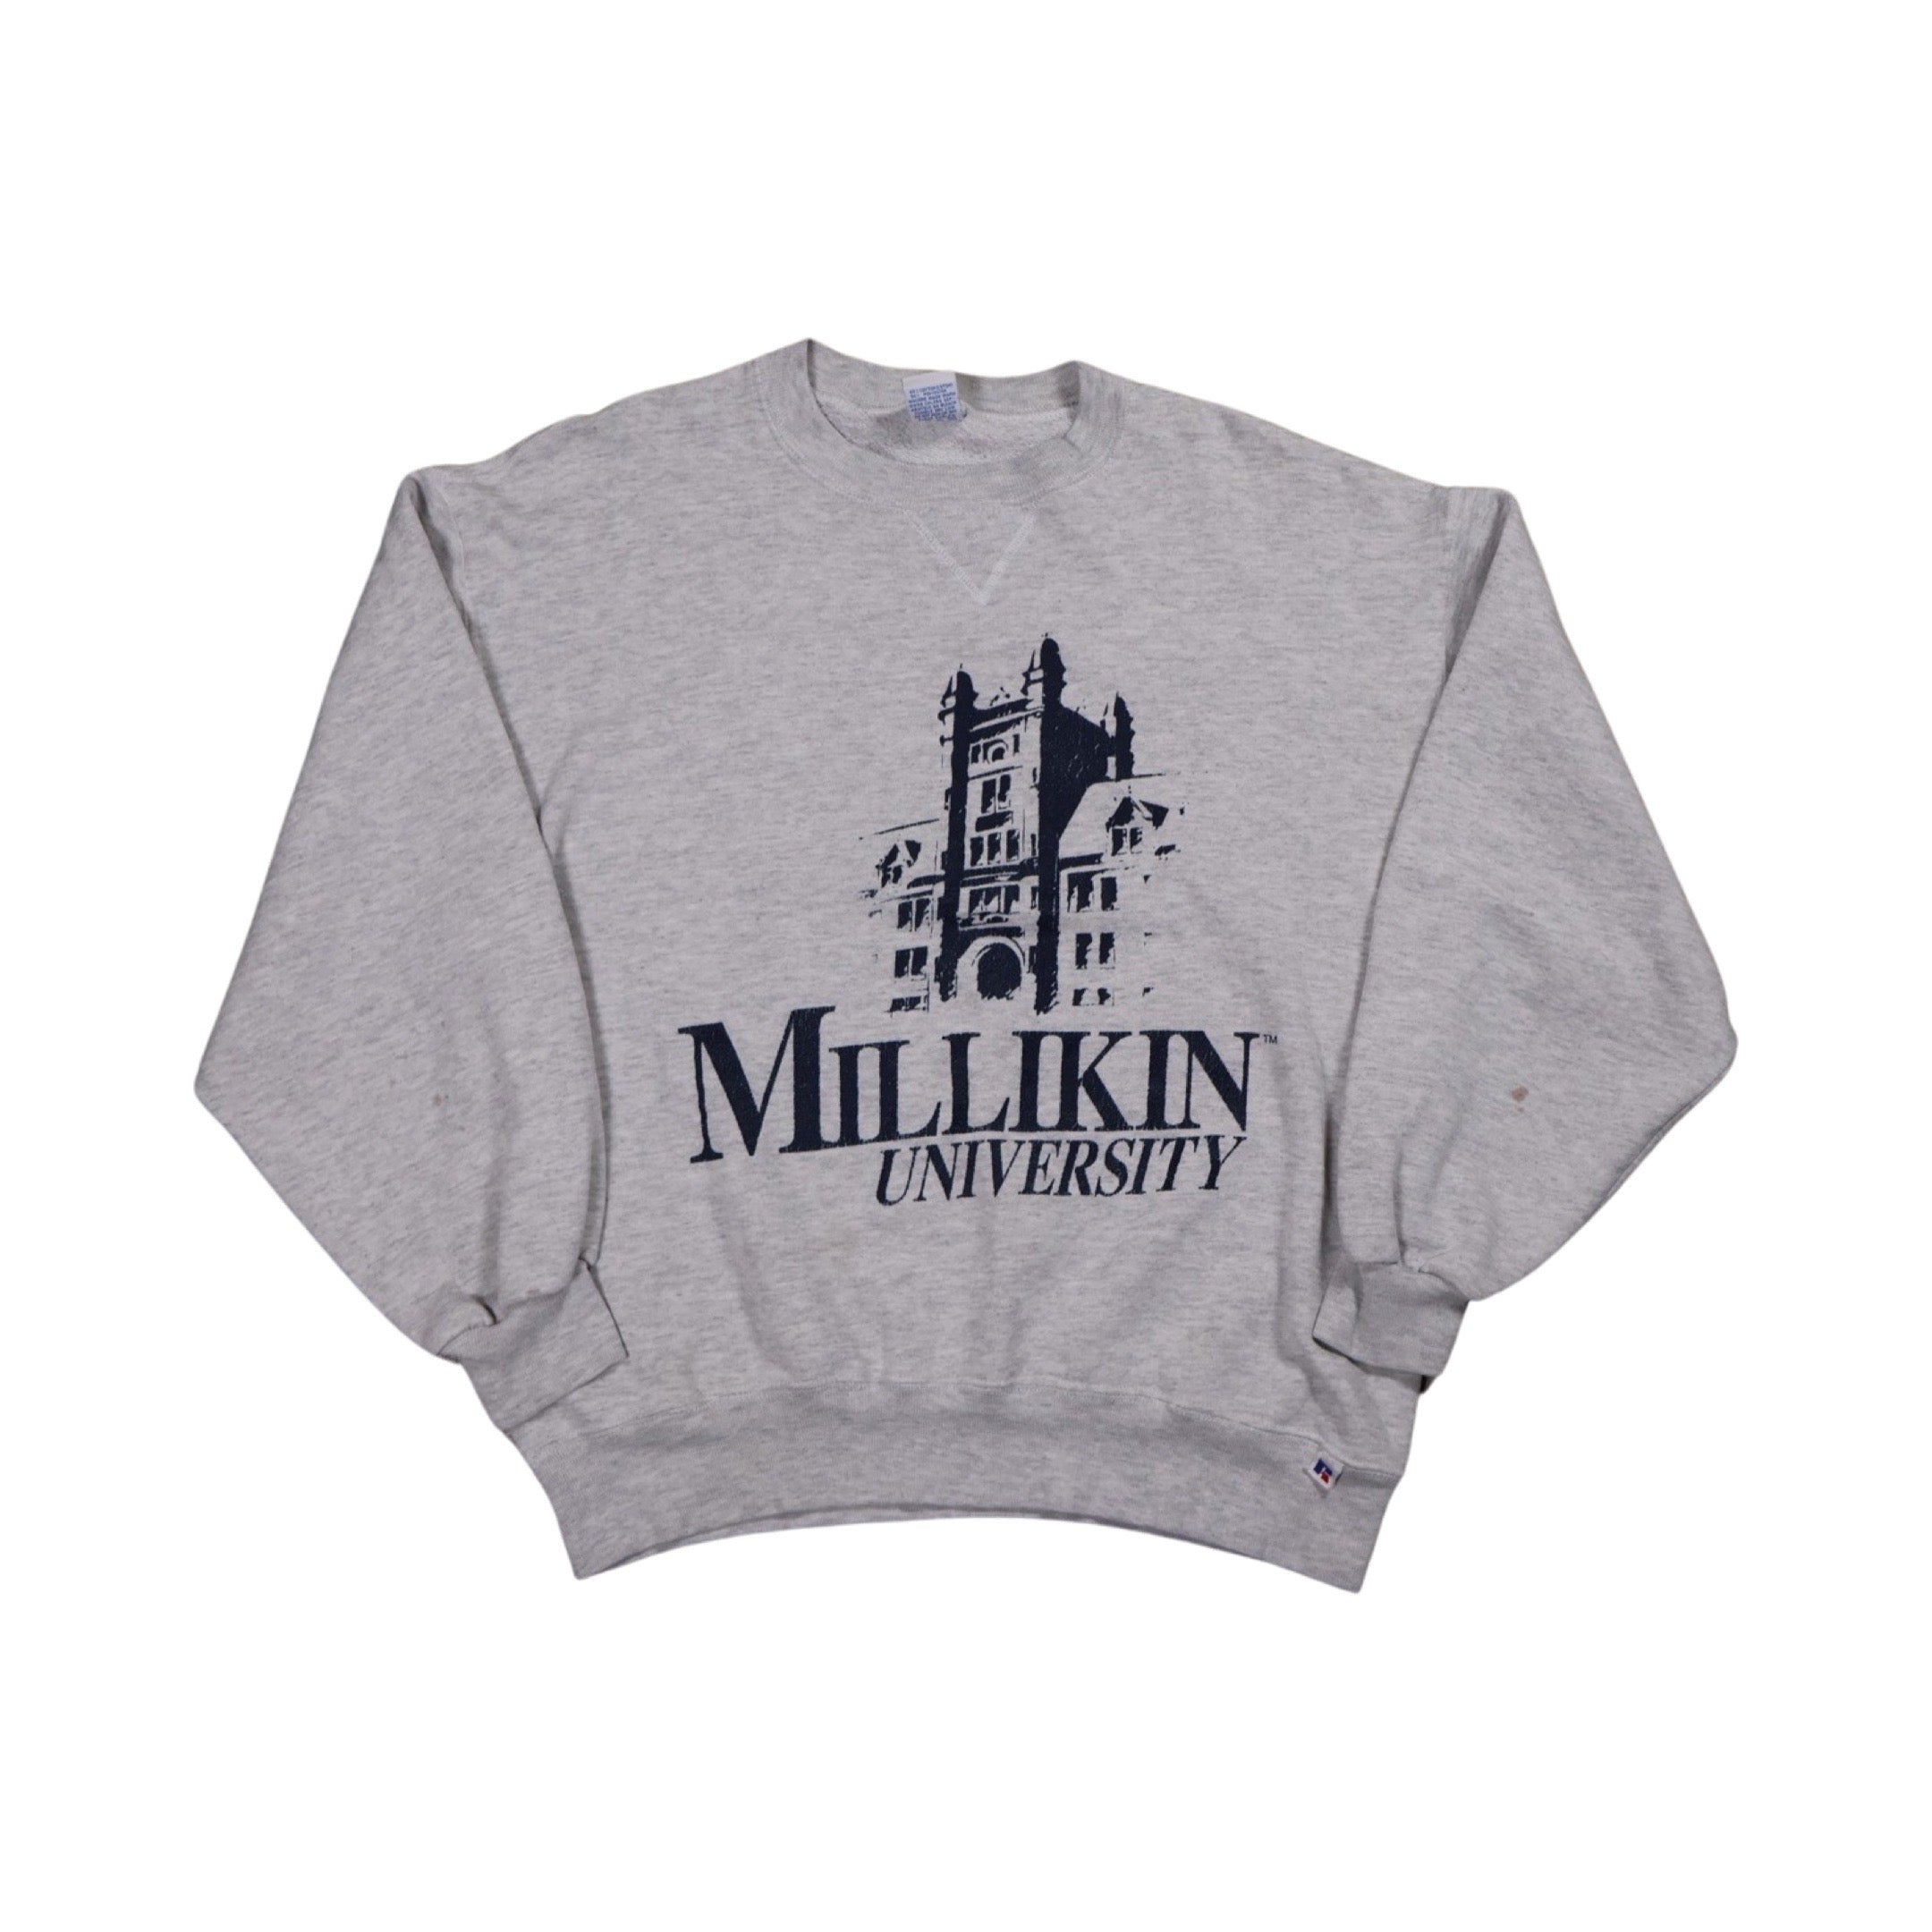 Millikin University 90s Sweater (Medium)